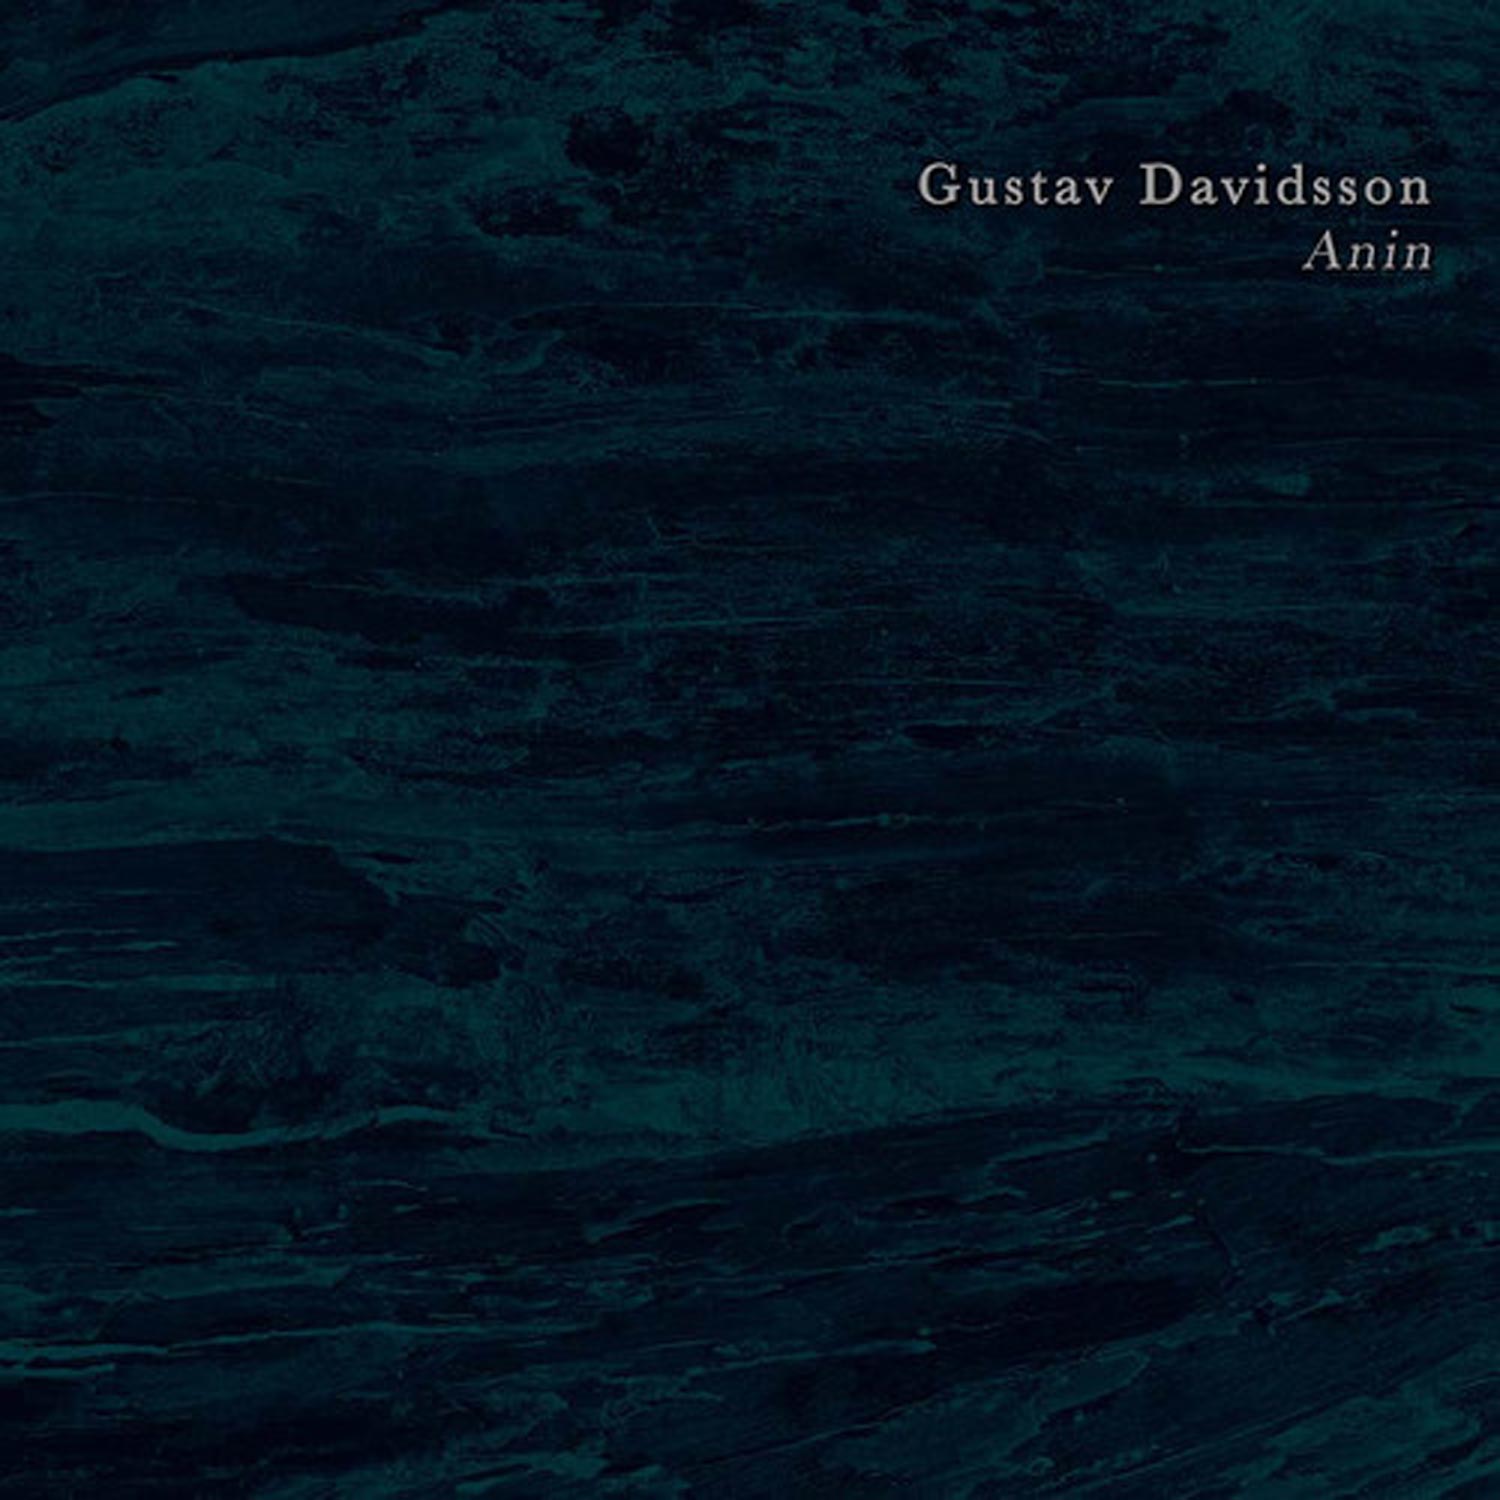 Gustav Davidsson – “Anin”